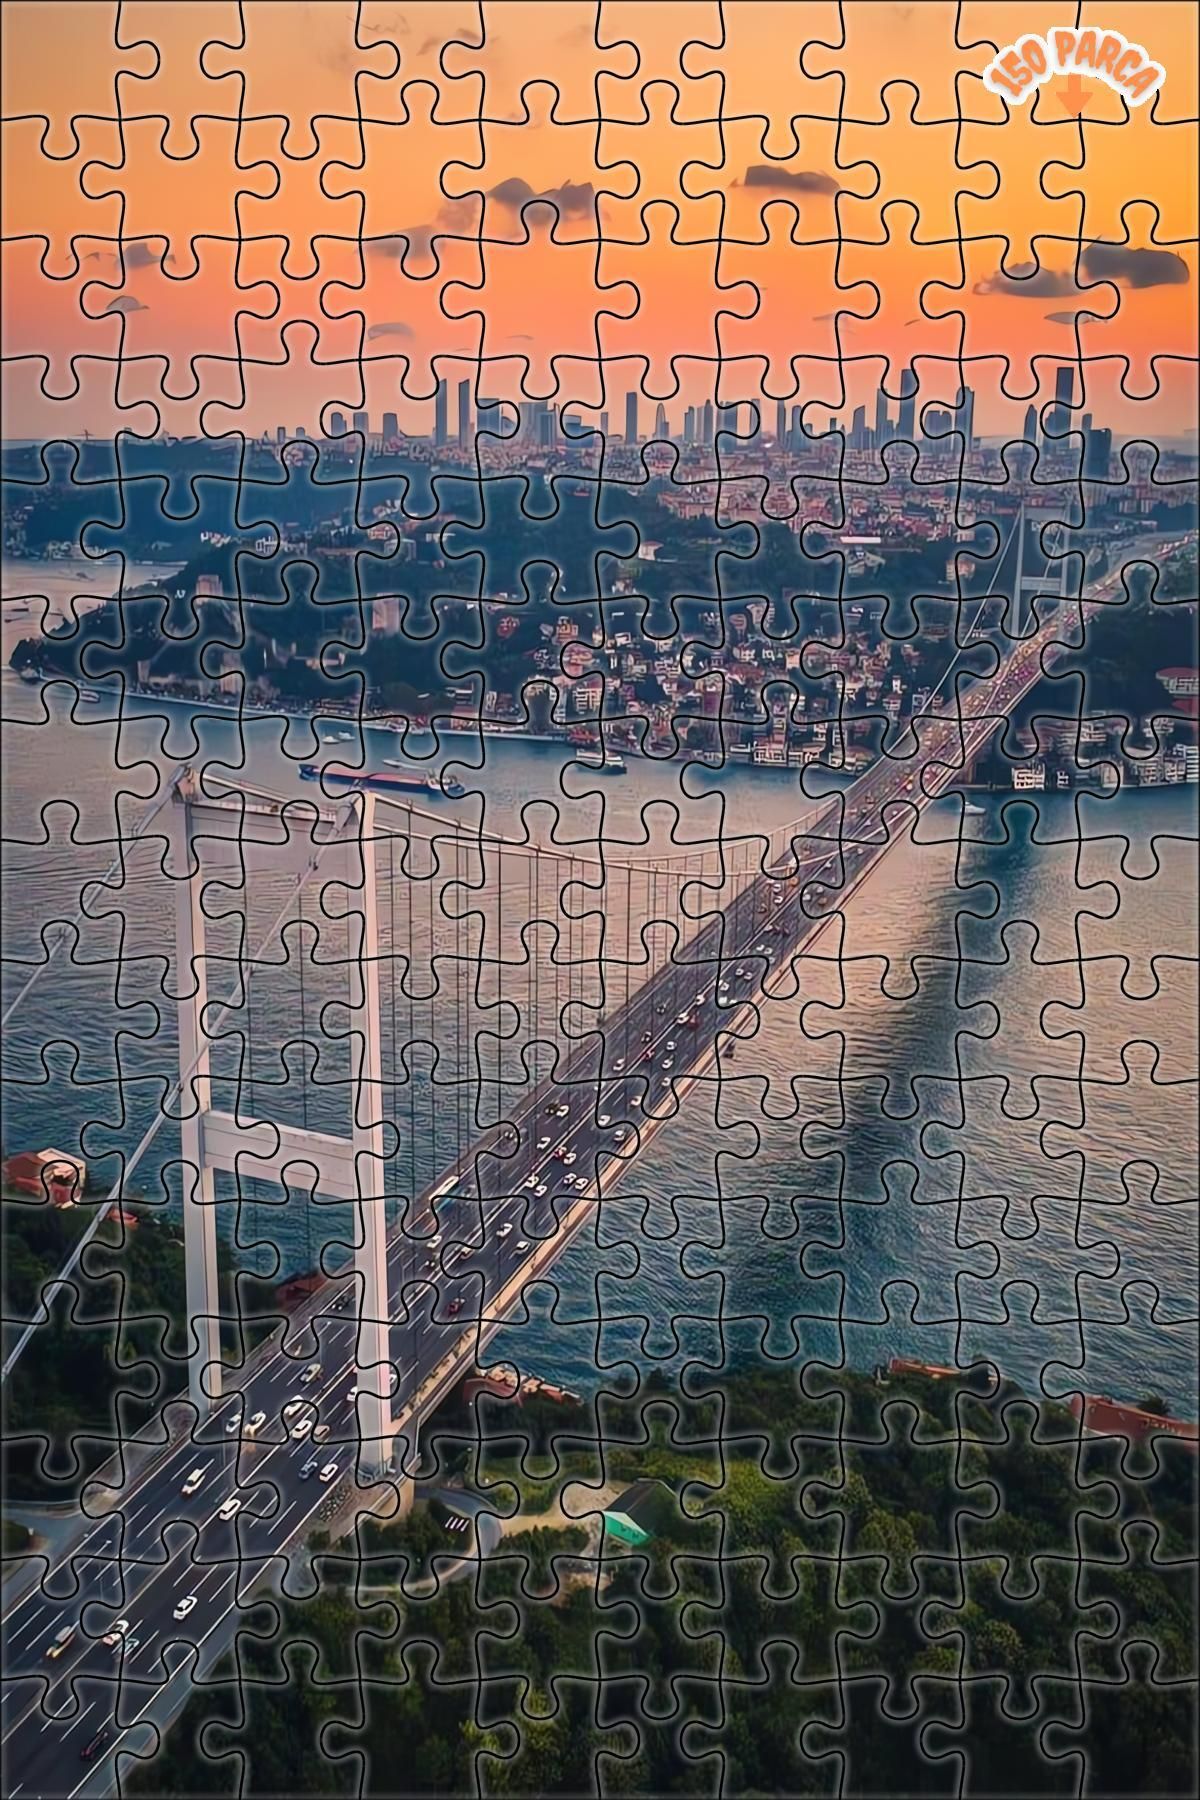 Teona Ahşap İstanbul Boğazı Dekoratif Çift Katlı Çerçeveli Asılabilir Ahşap Puzzle 150 PARÇA 20X30